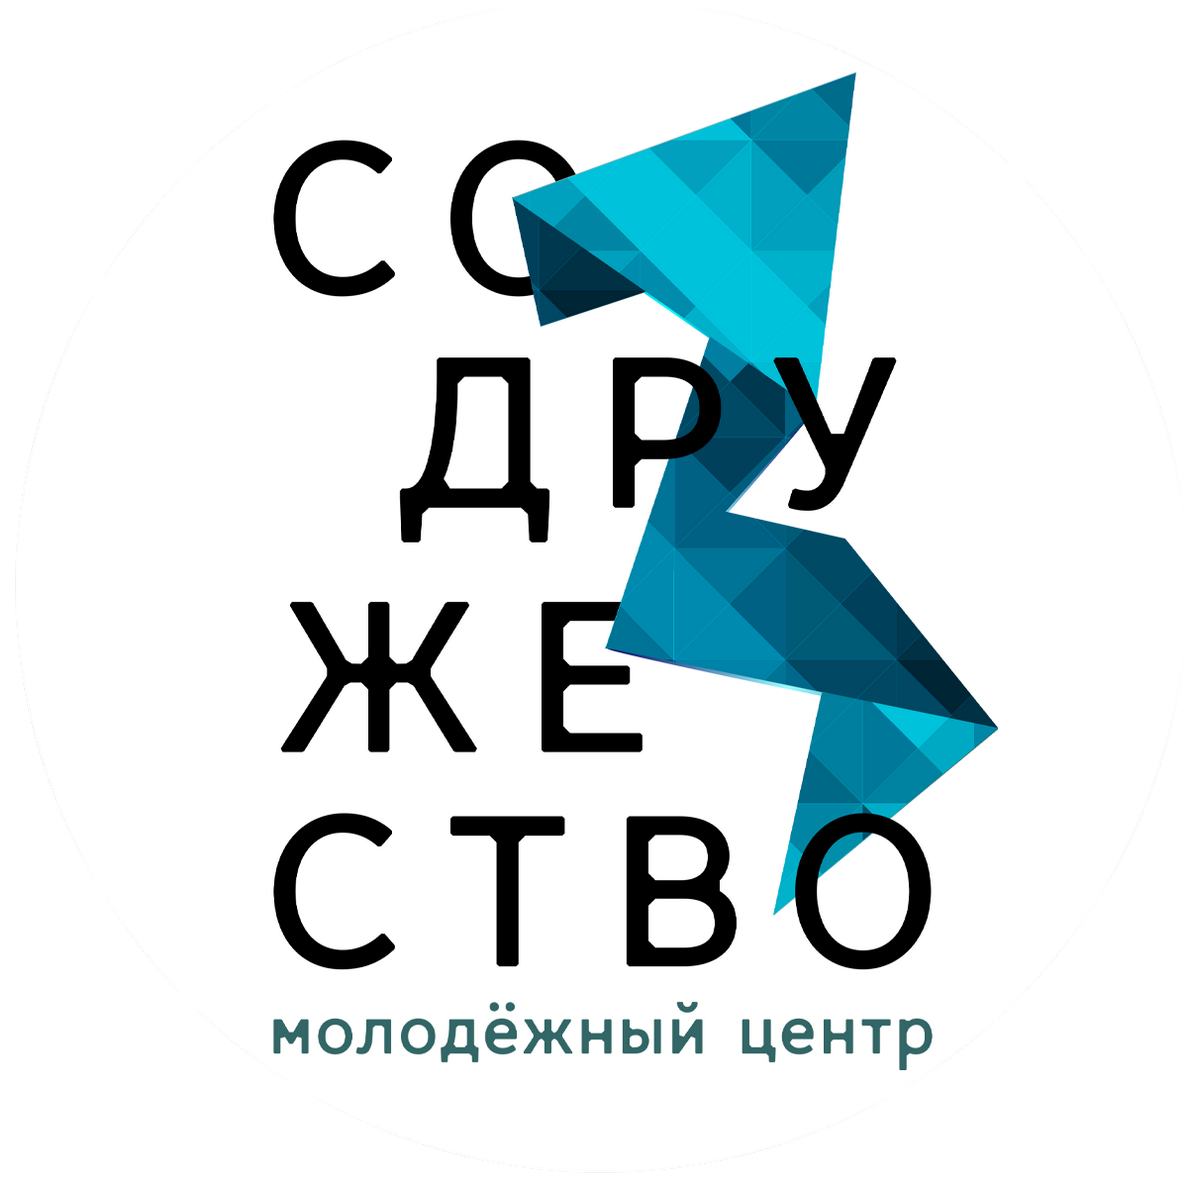 Молодёжный центр Содружество Новосибирск. Молодежный центр. Молодежный центр логотип. Содружество логотип.